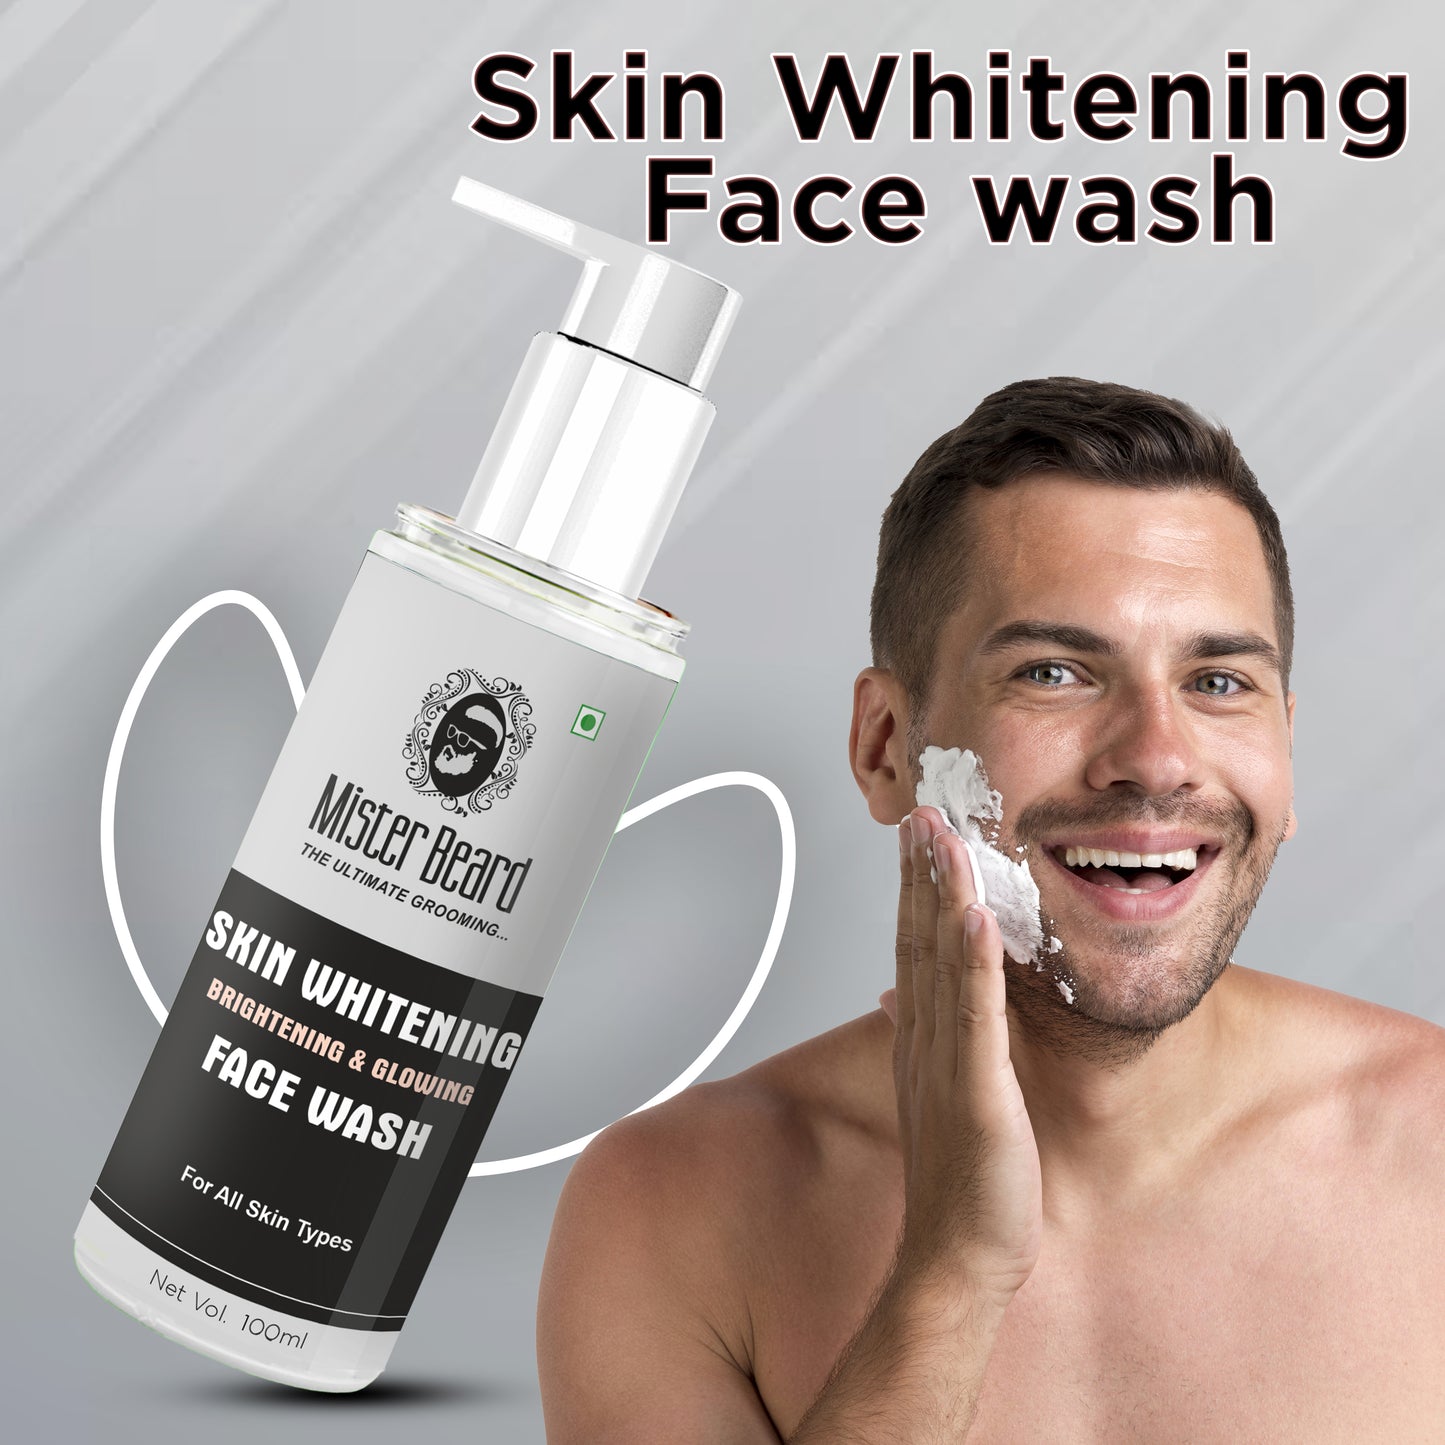 Mister Beard Skin Whitening Face Wash 100ml - Deep Cleansing Skin Whitening Facial Foam, face wash, for all skin types Face Wash